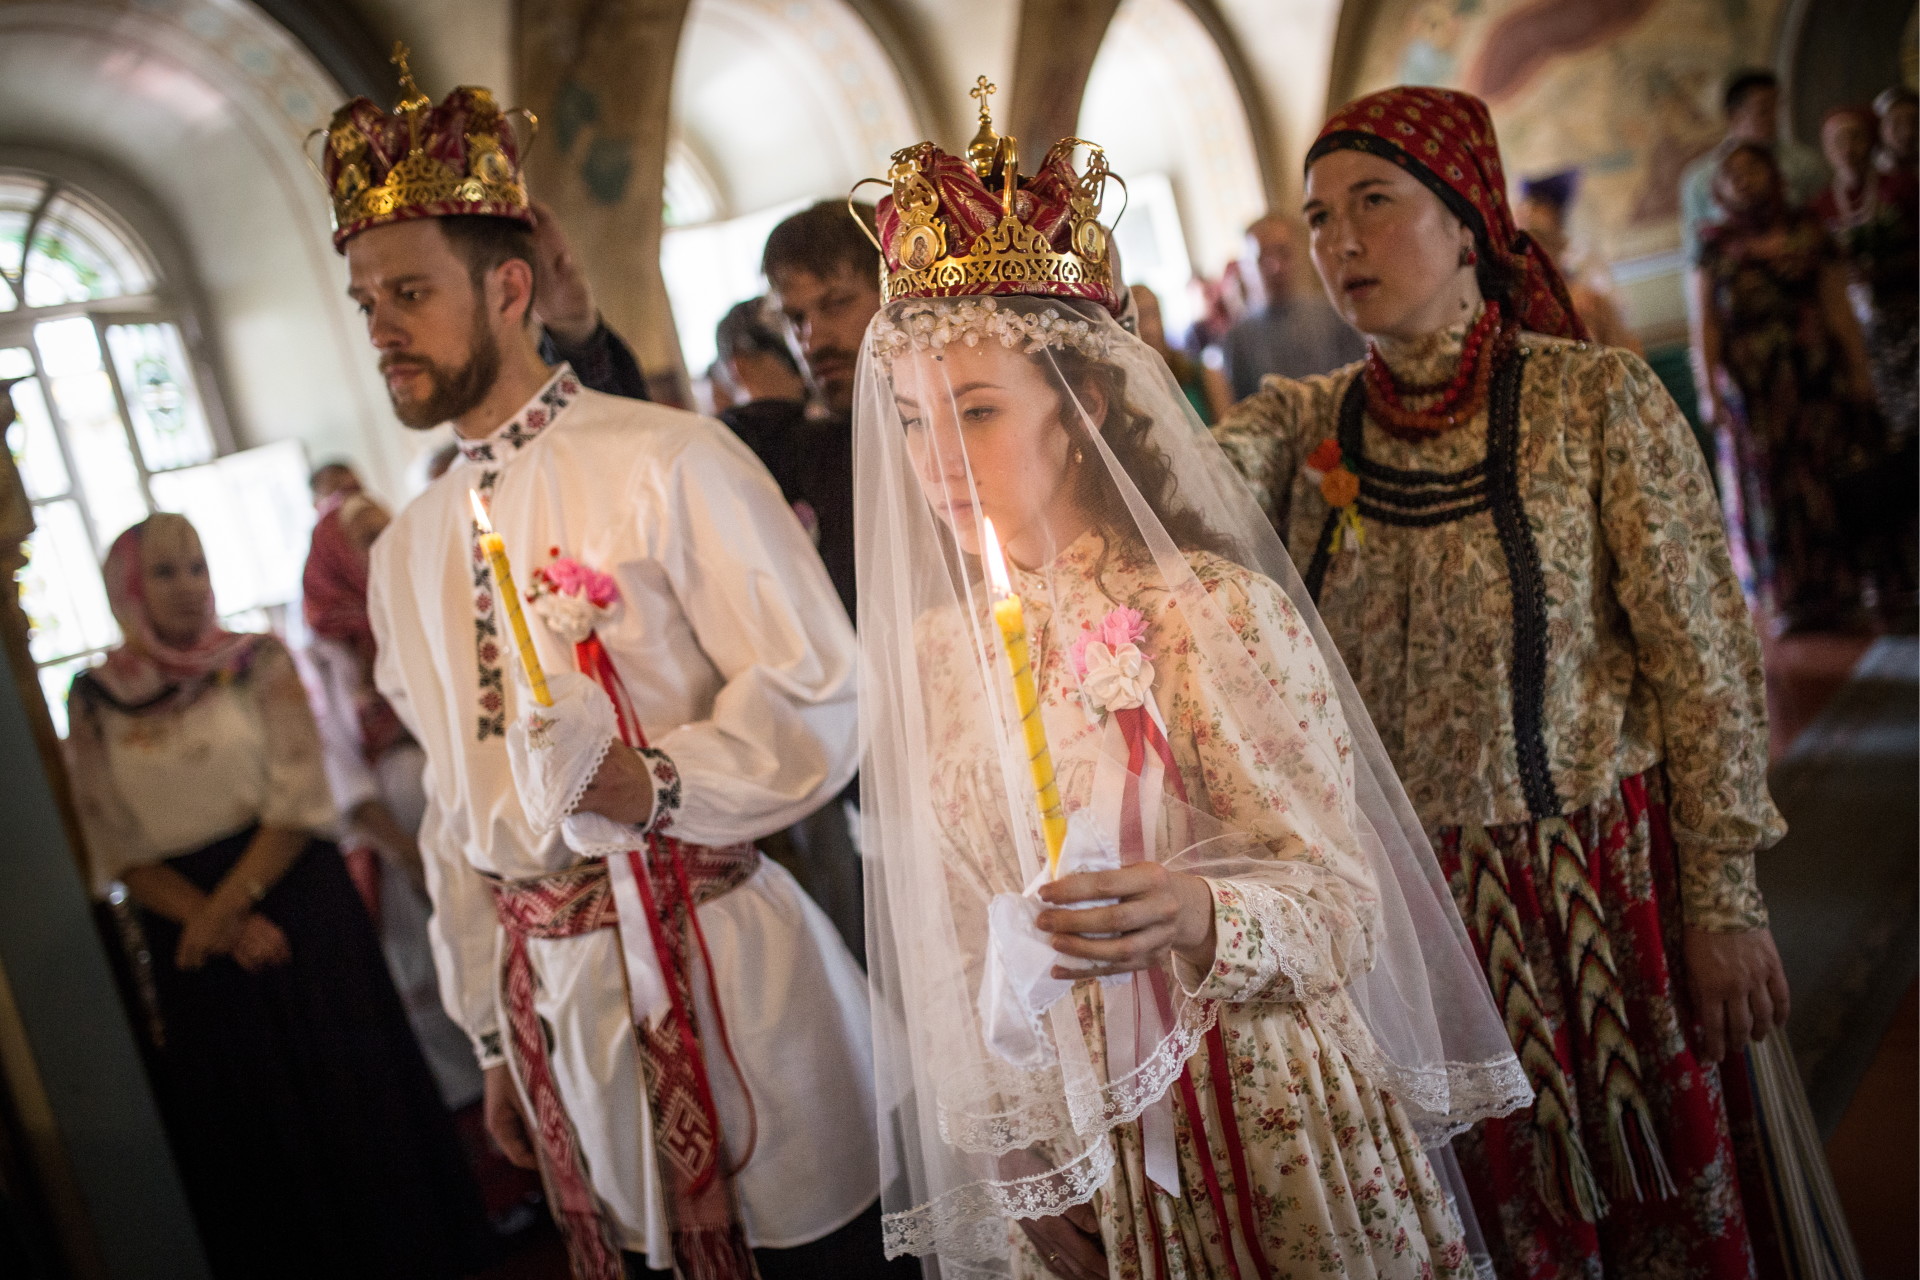 这是 Bride Diana Khamitova (R) 和 groom Ilya Klinkin 在the Resurrection Cathedral教堂举行婚礼的照片，这里把人名标注以表示对主人公的尊重。 （由托木斯克国立大学社会研究院刊登）